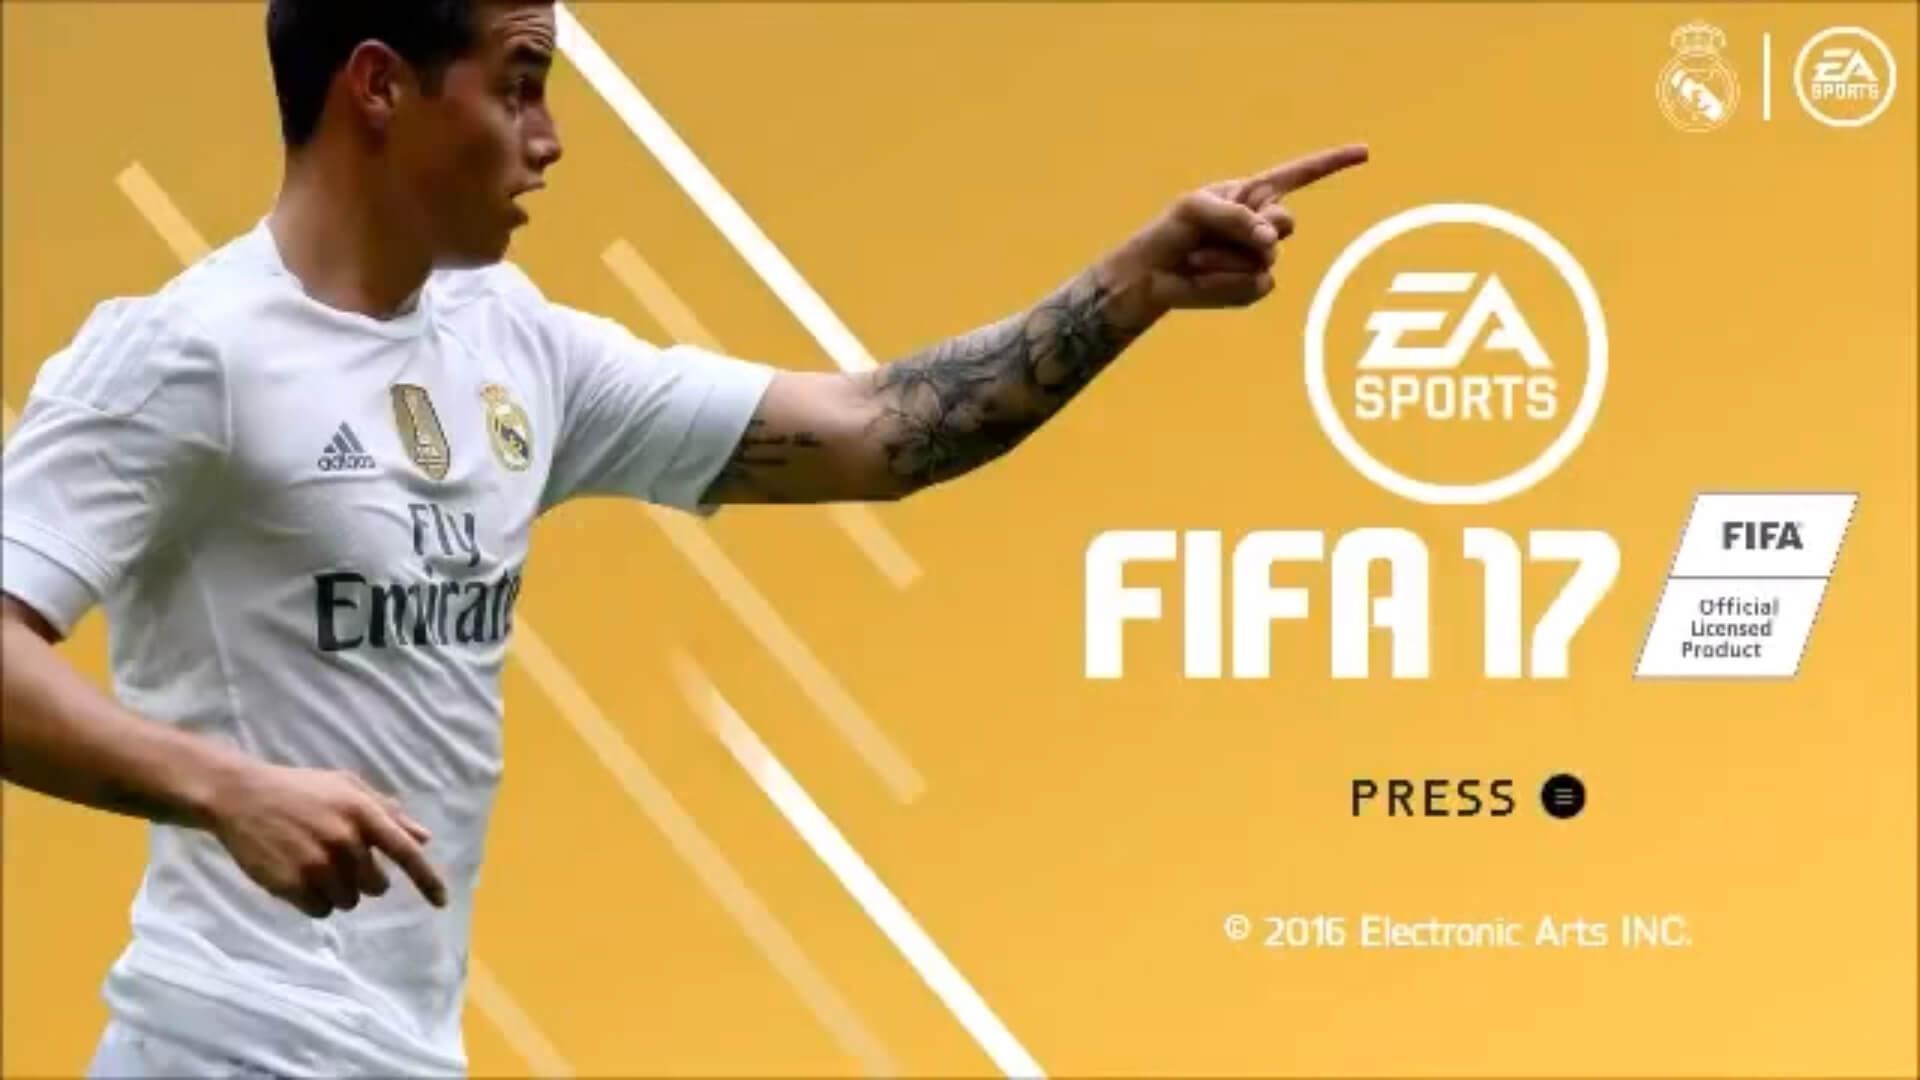 FIFA-17